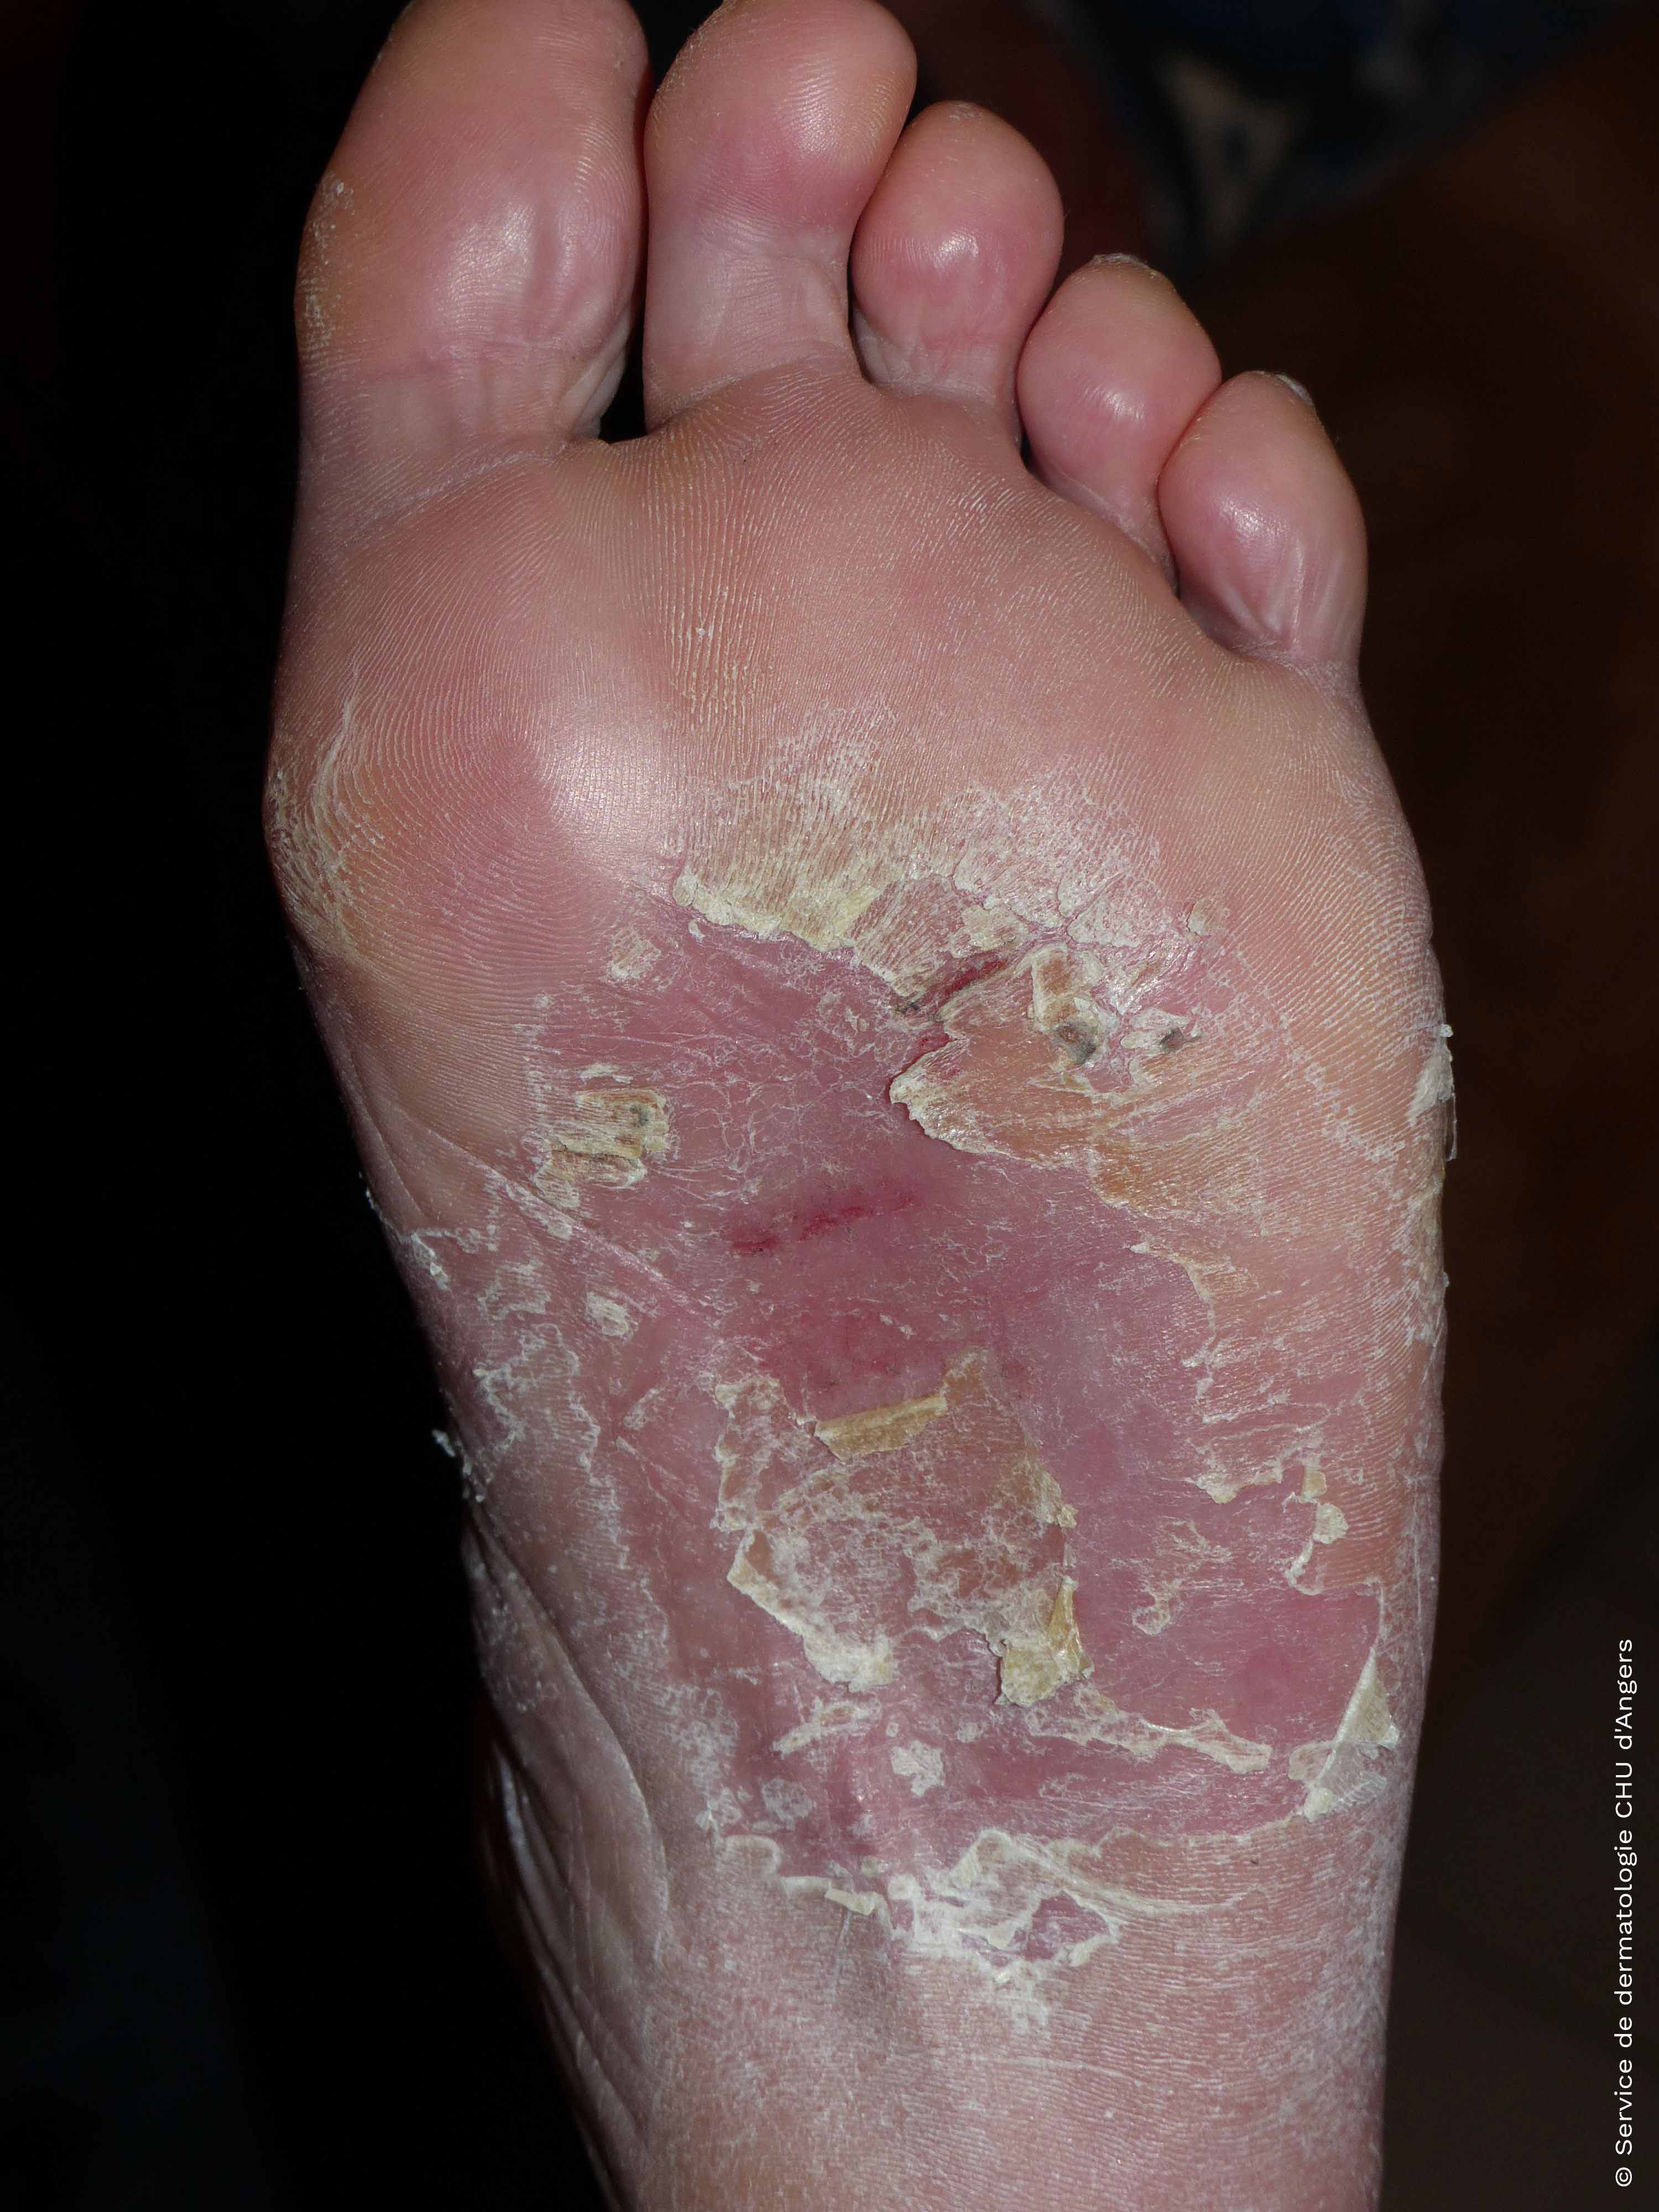 Eczema on the feet Eczema Foundation